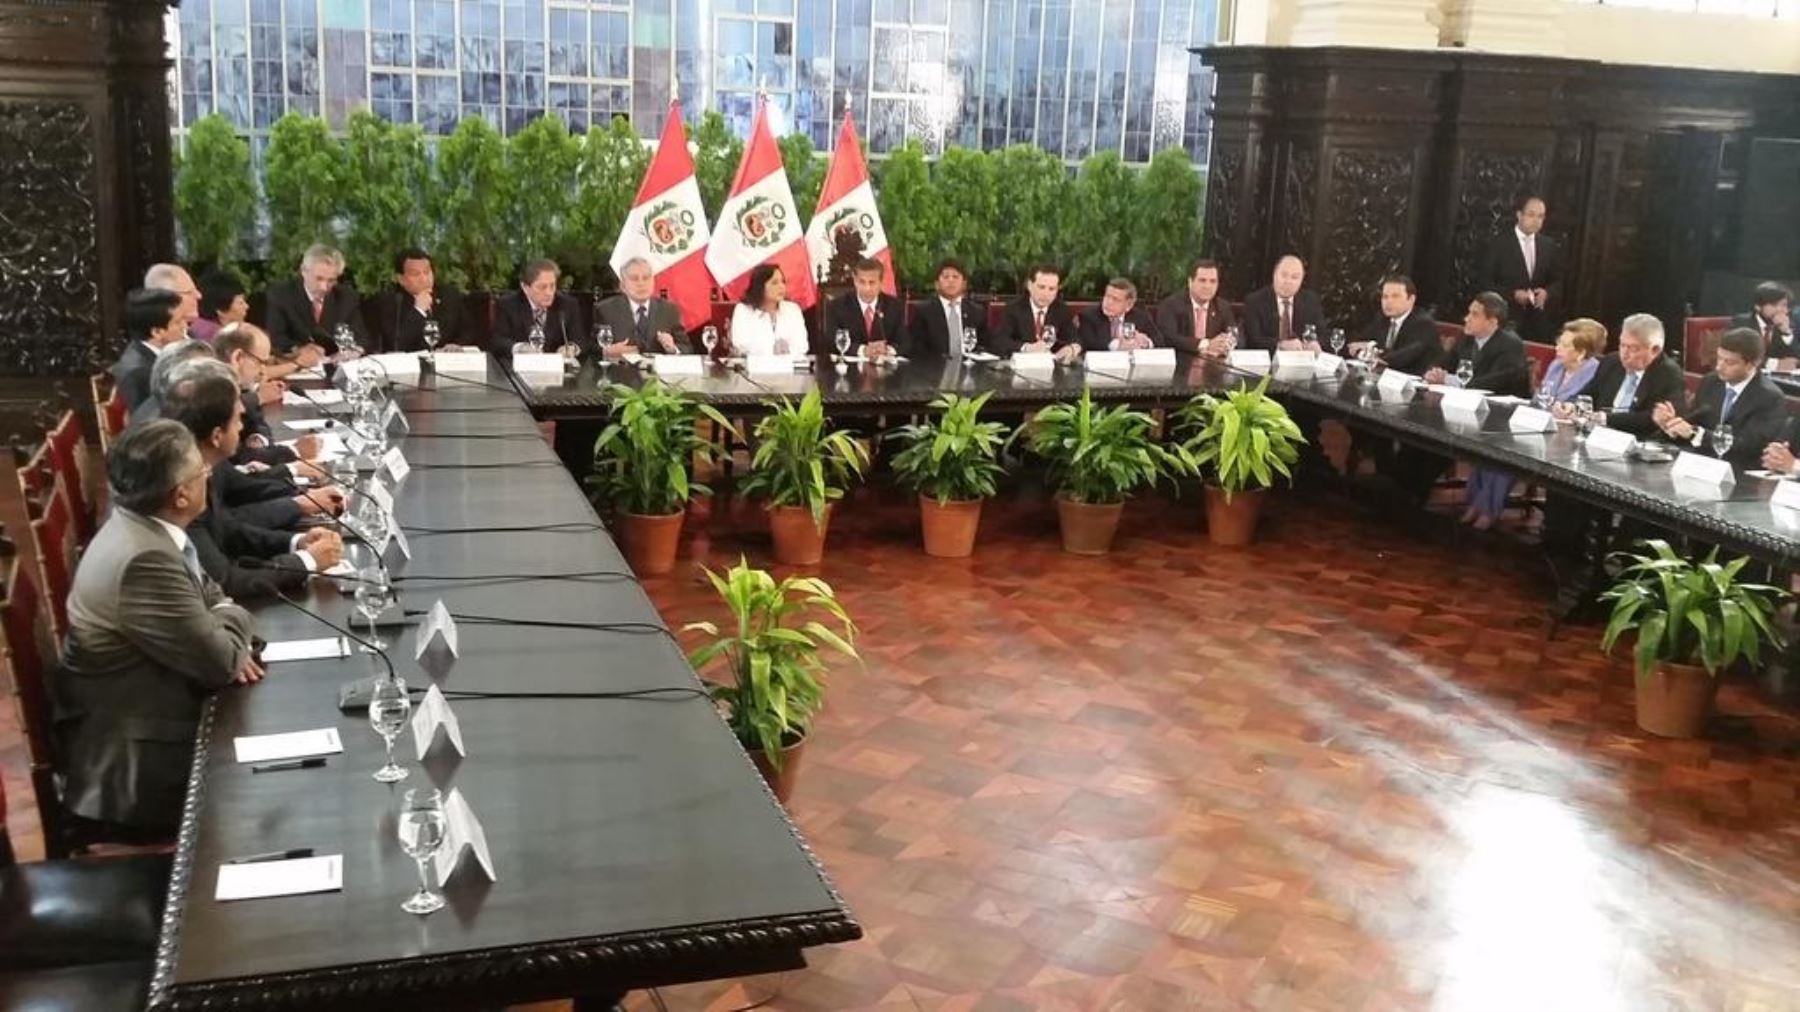 Segunda jornada del diálogo nacional entre el Ejecutivo y los partidos políticos, encabezada por el Presidente Ollanta Humala.